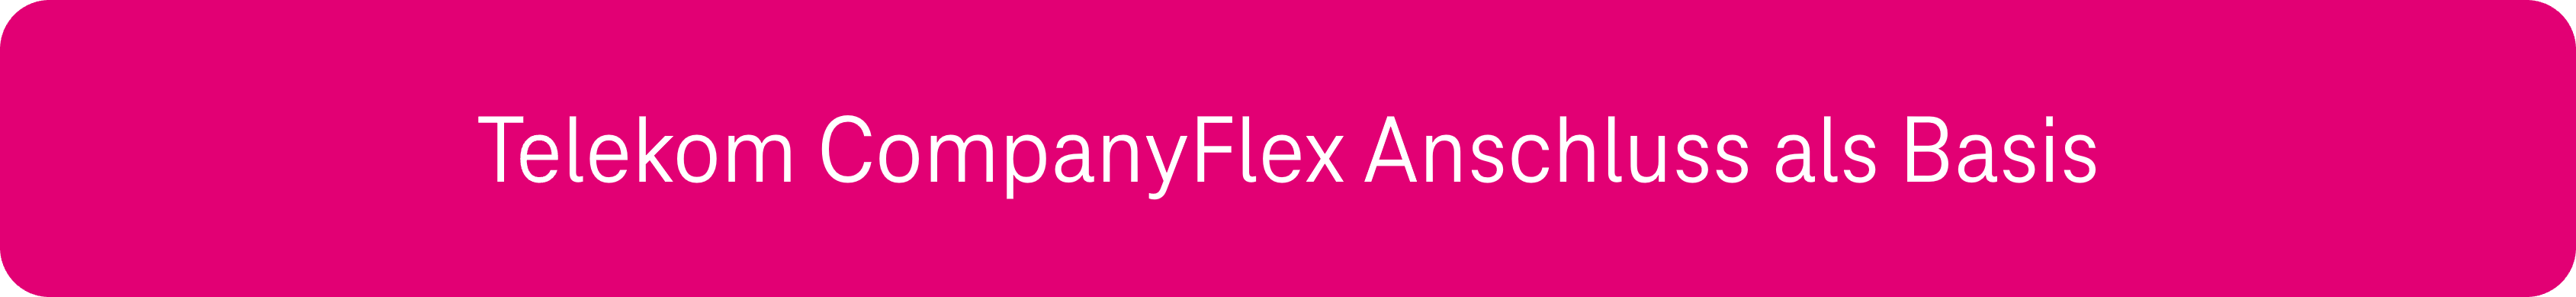 Telekom CompanyFlex Anschluss als Basis